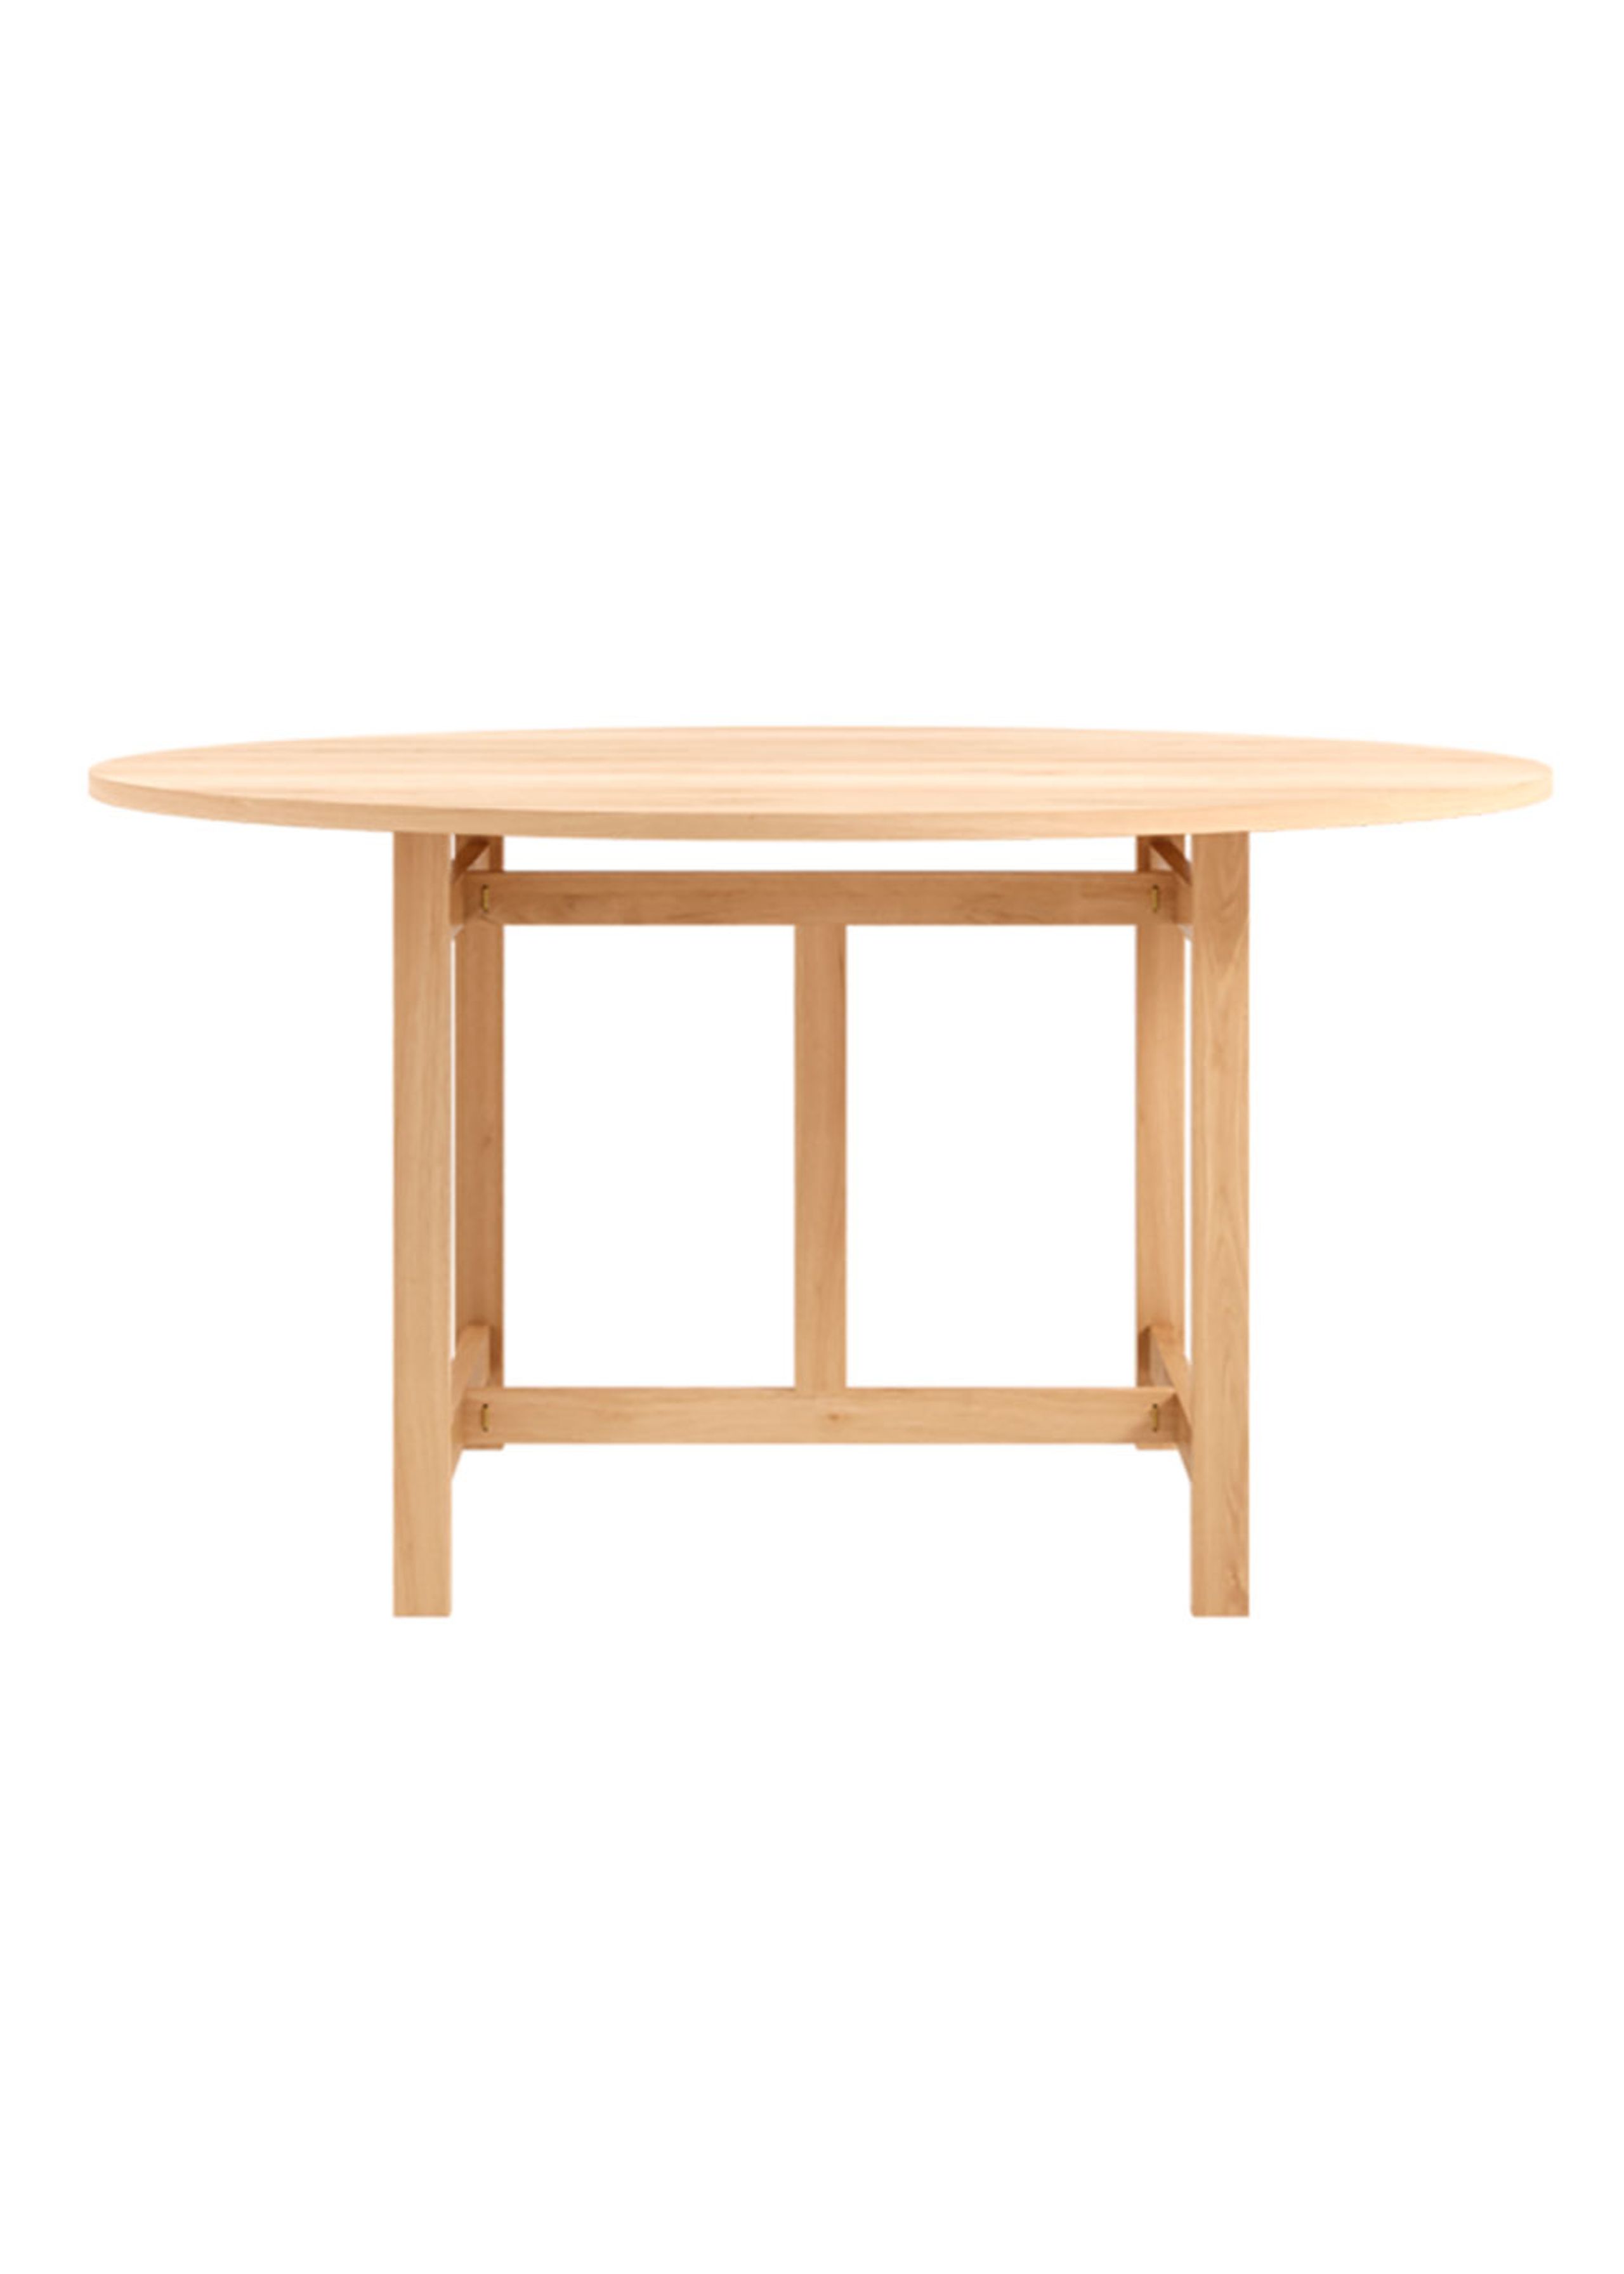 MOEBE - Esstisch - Round Dining Table - Oak